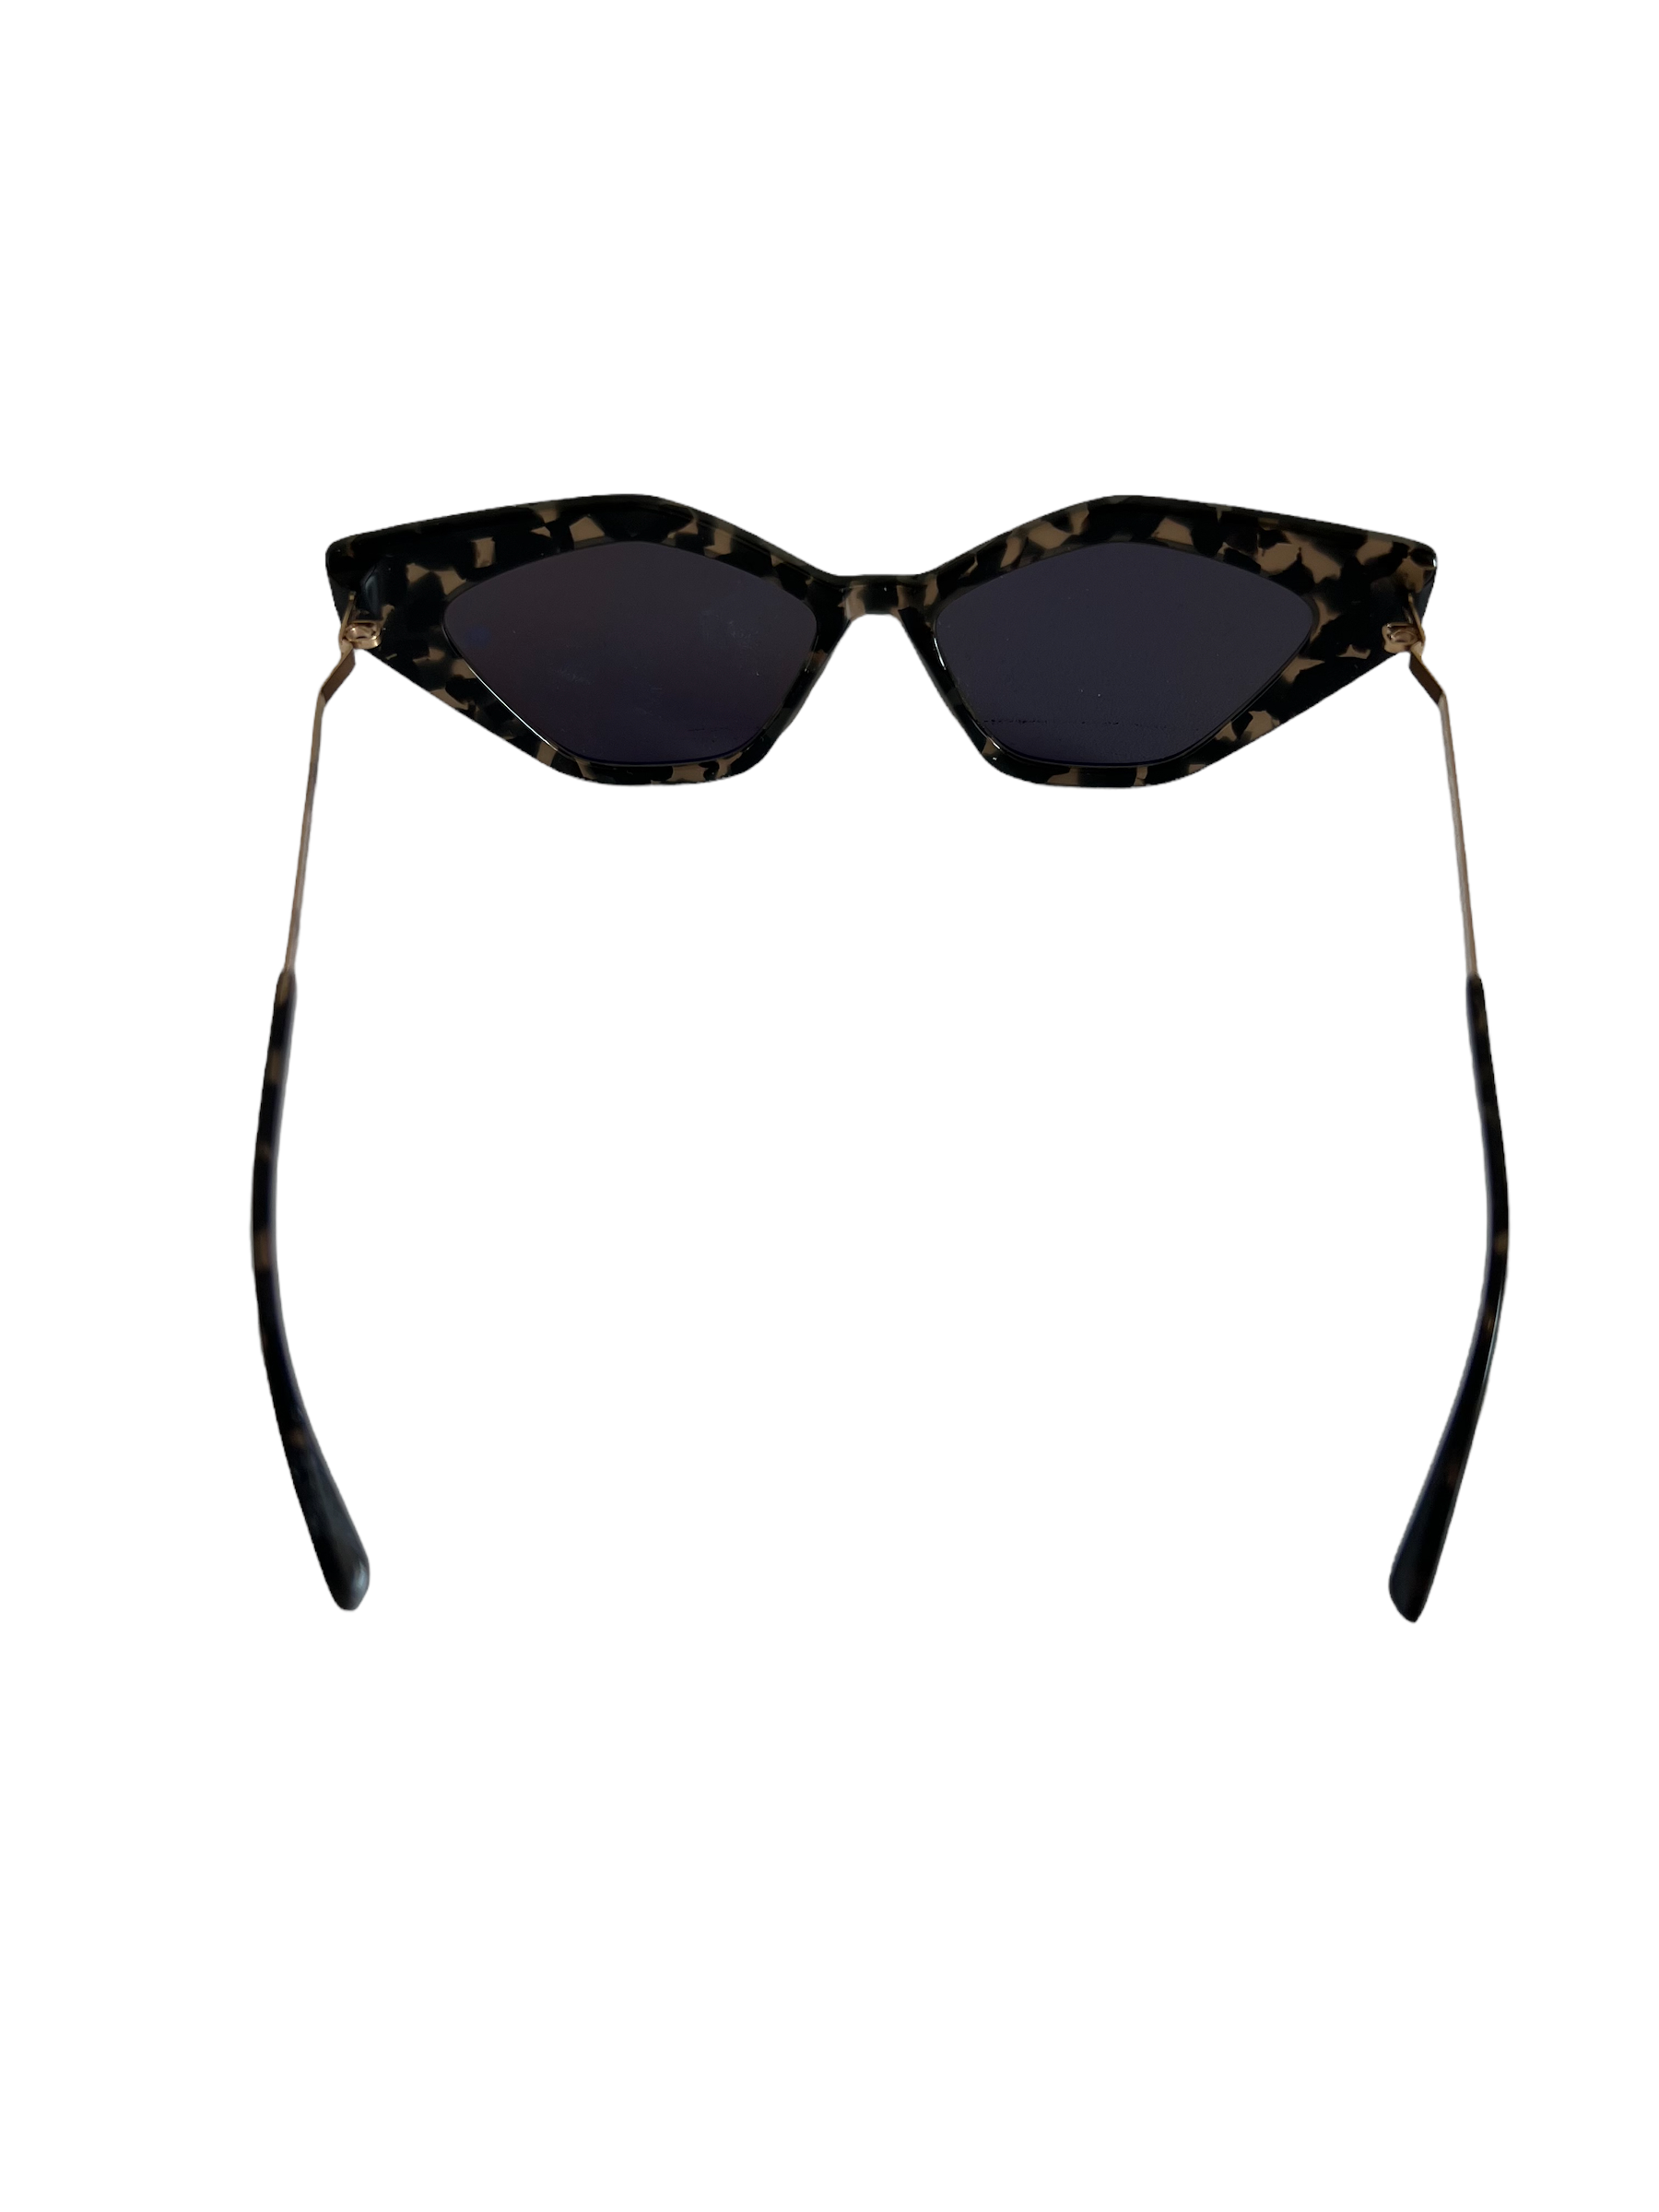 Produktbild der Mykita Sunglasses leo gold flexible von hinten vor weißem Hintergrund.